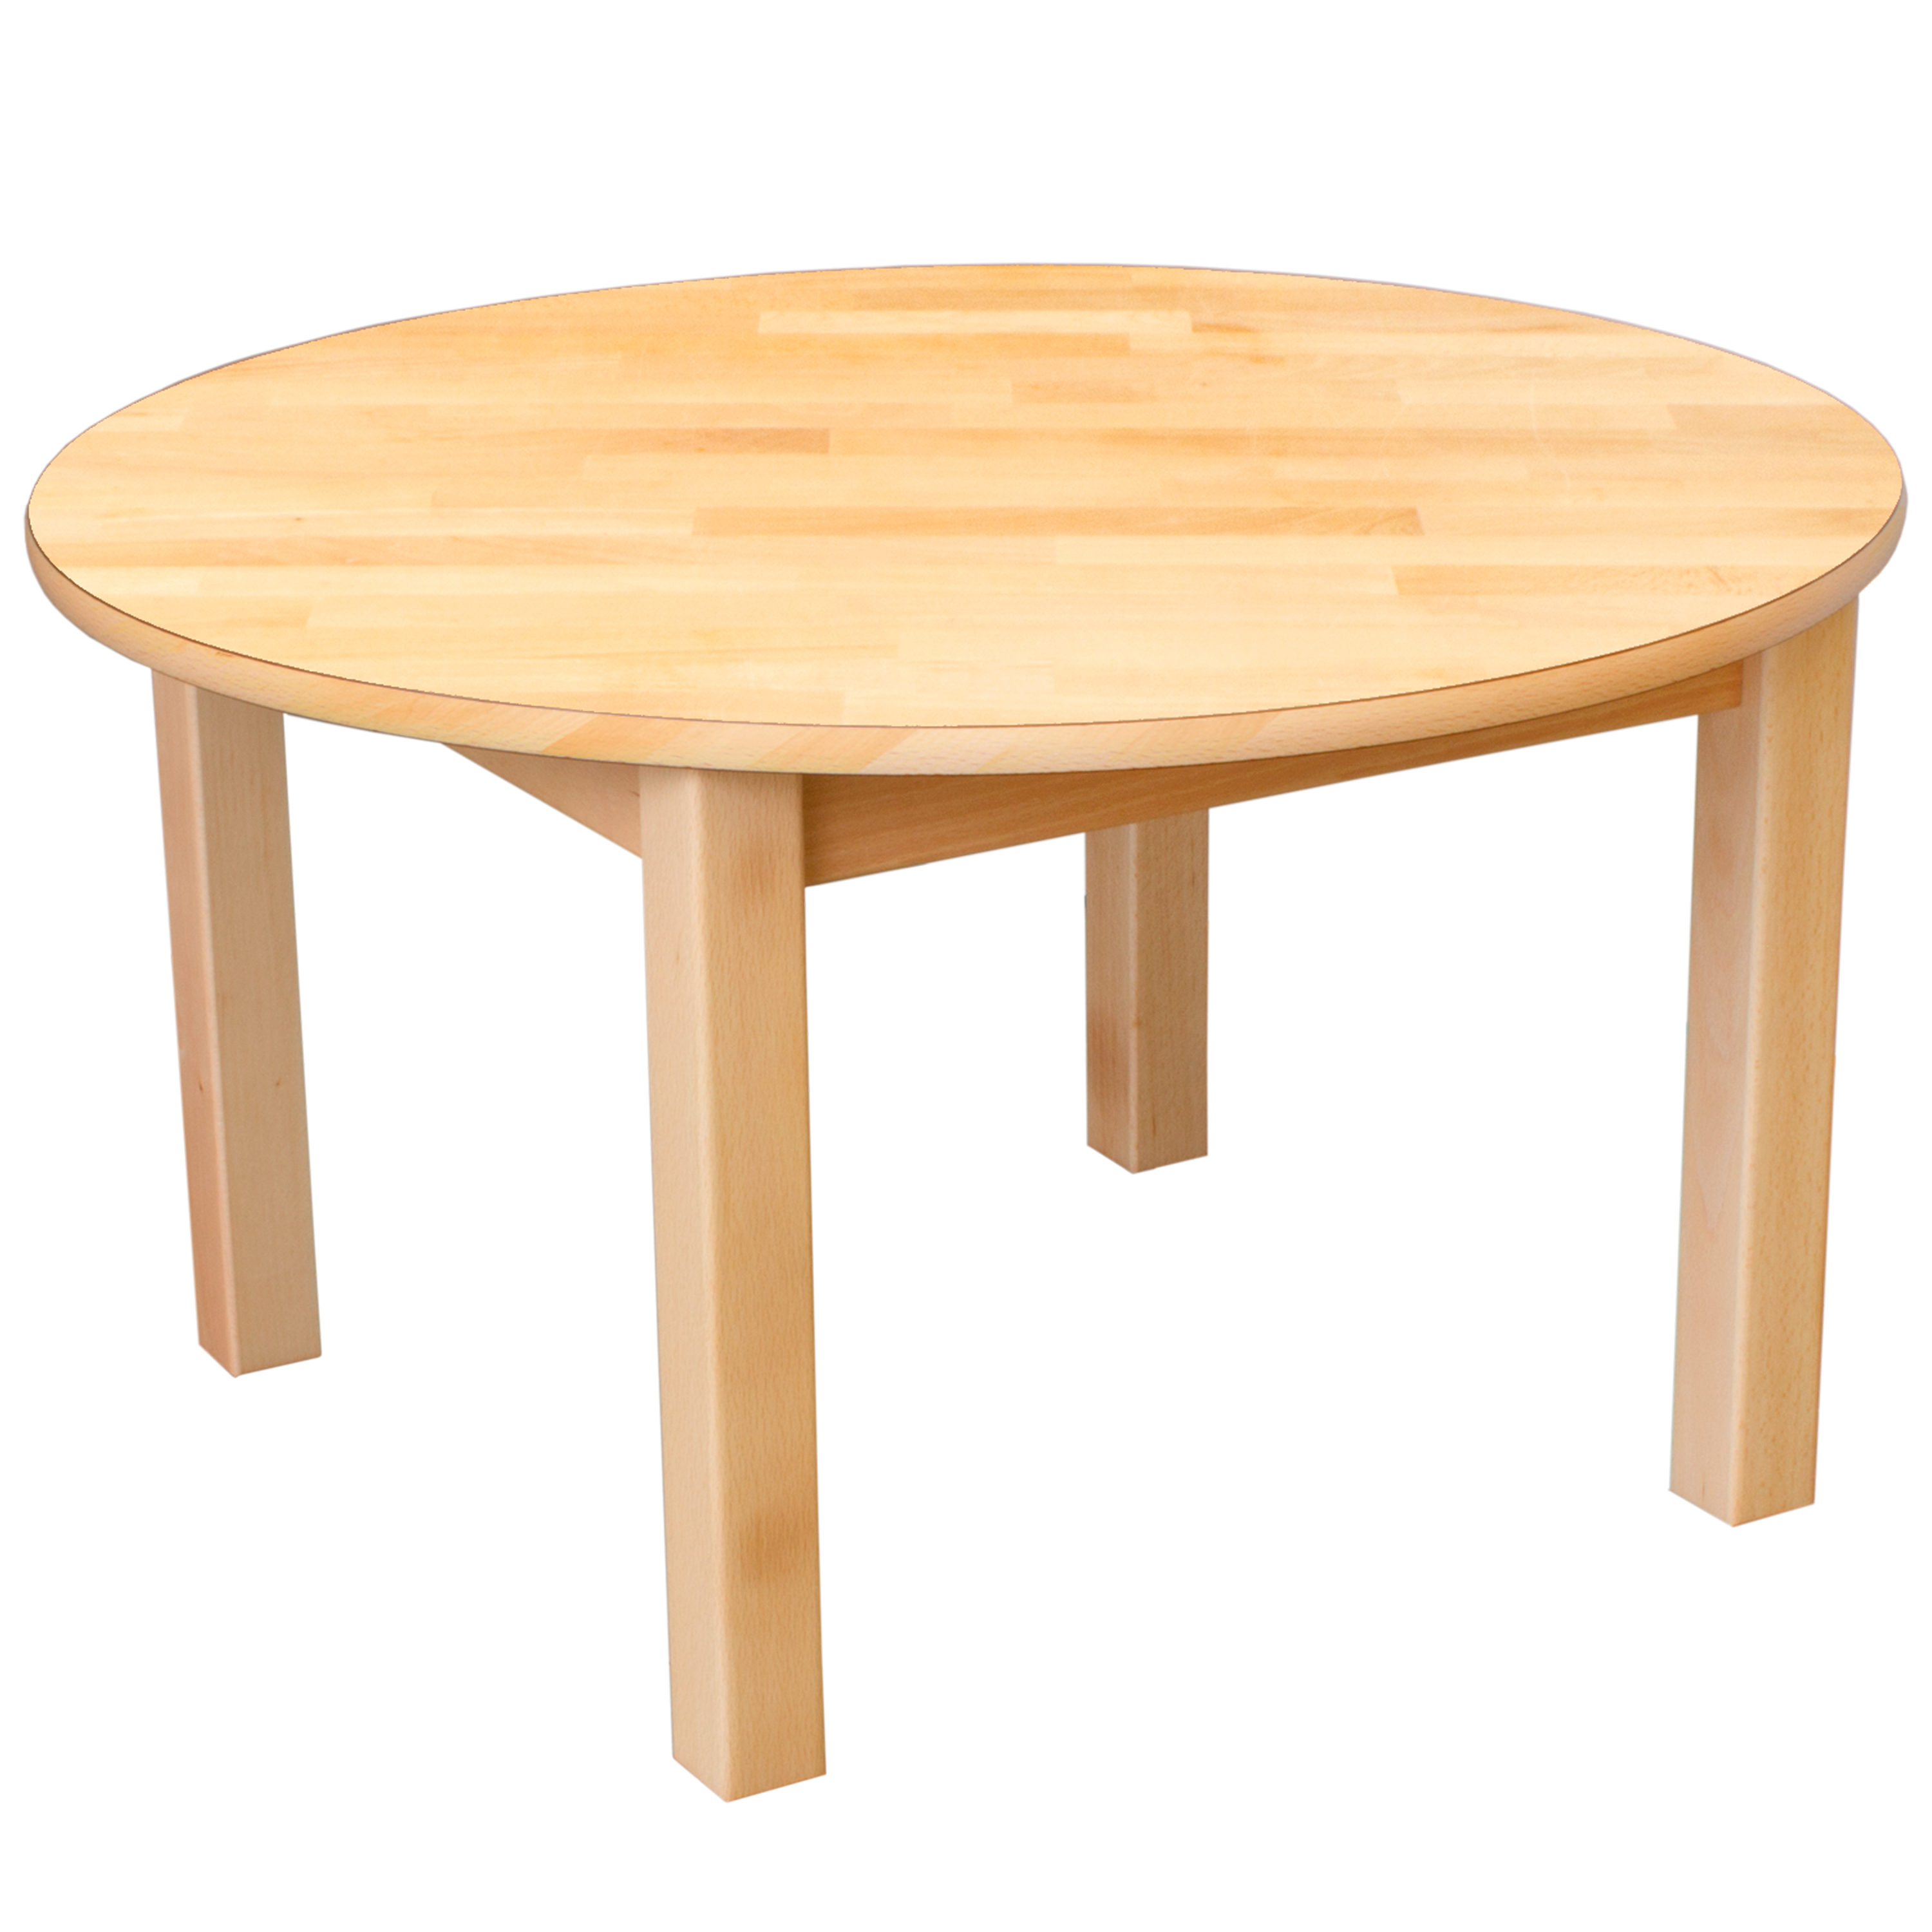 Runder Tisch aus Massivholz, Ø 100 cm, Tischhöhe 40 cm